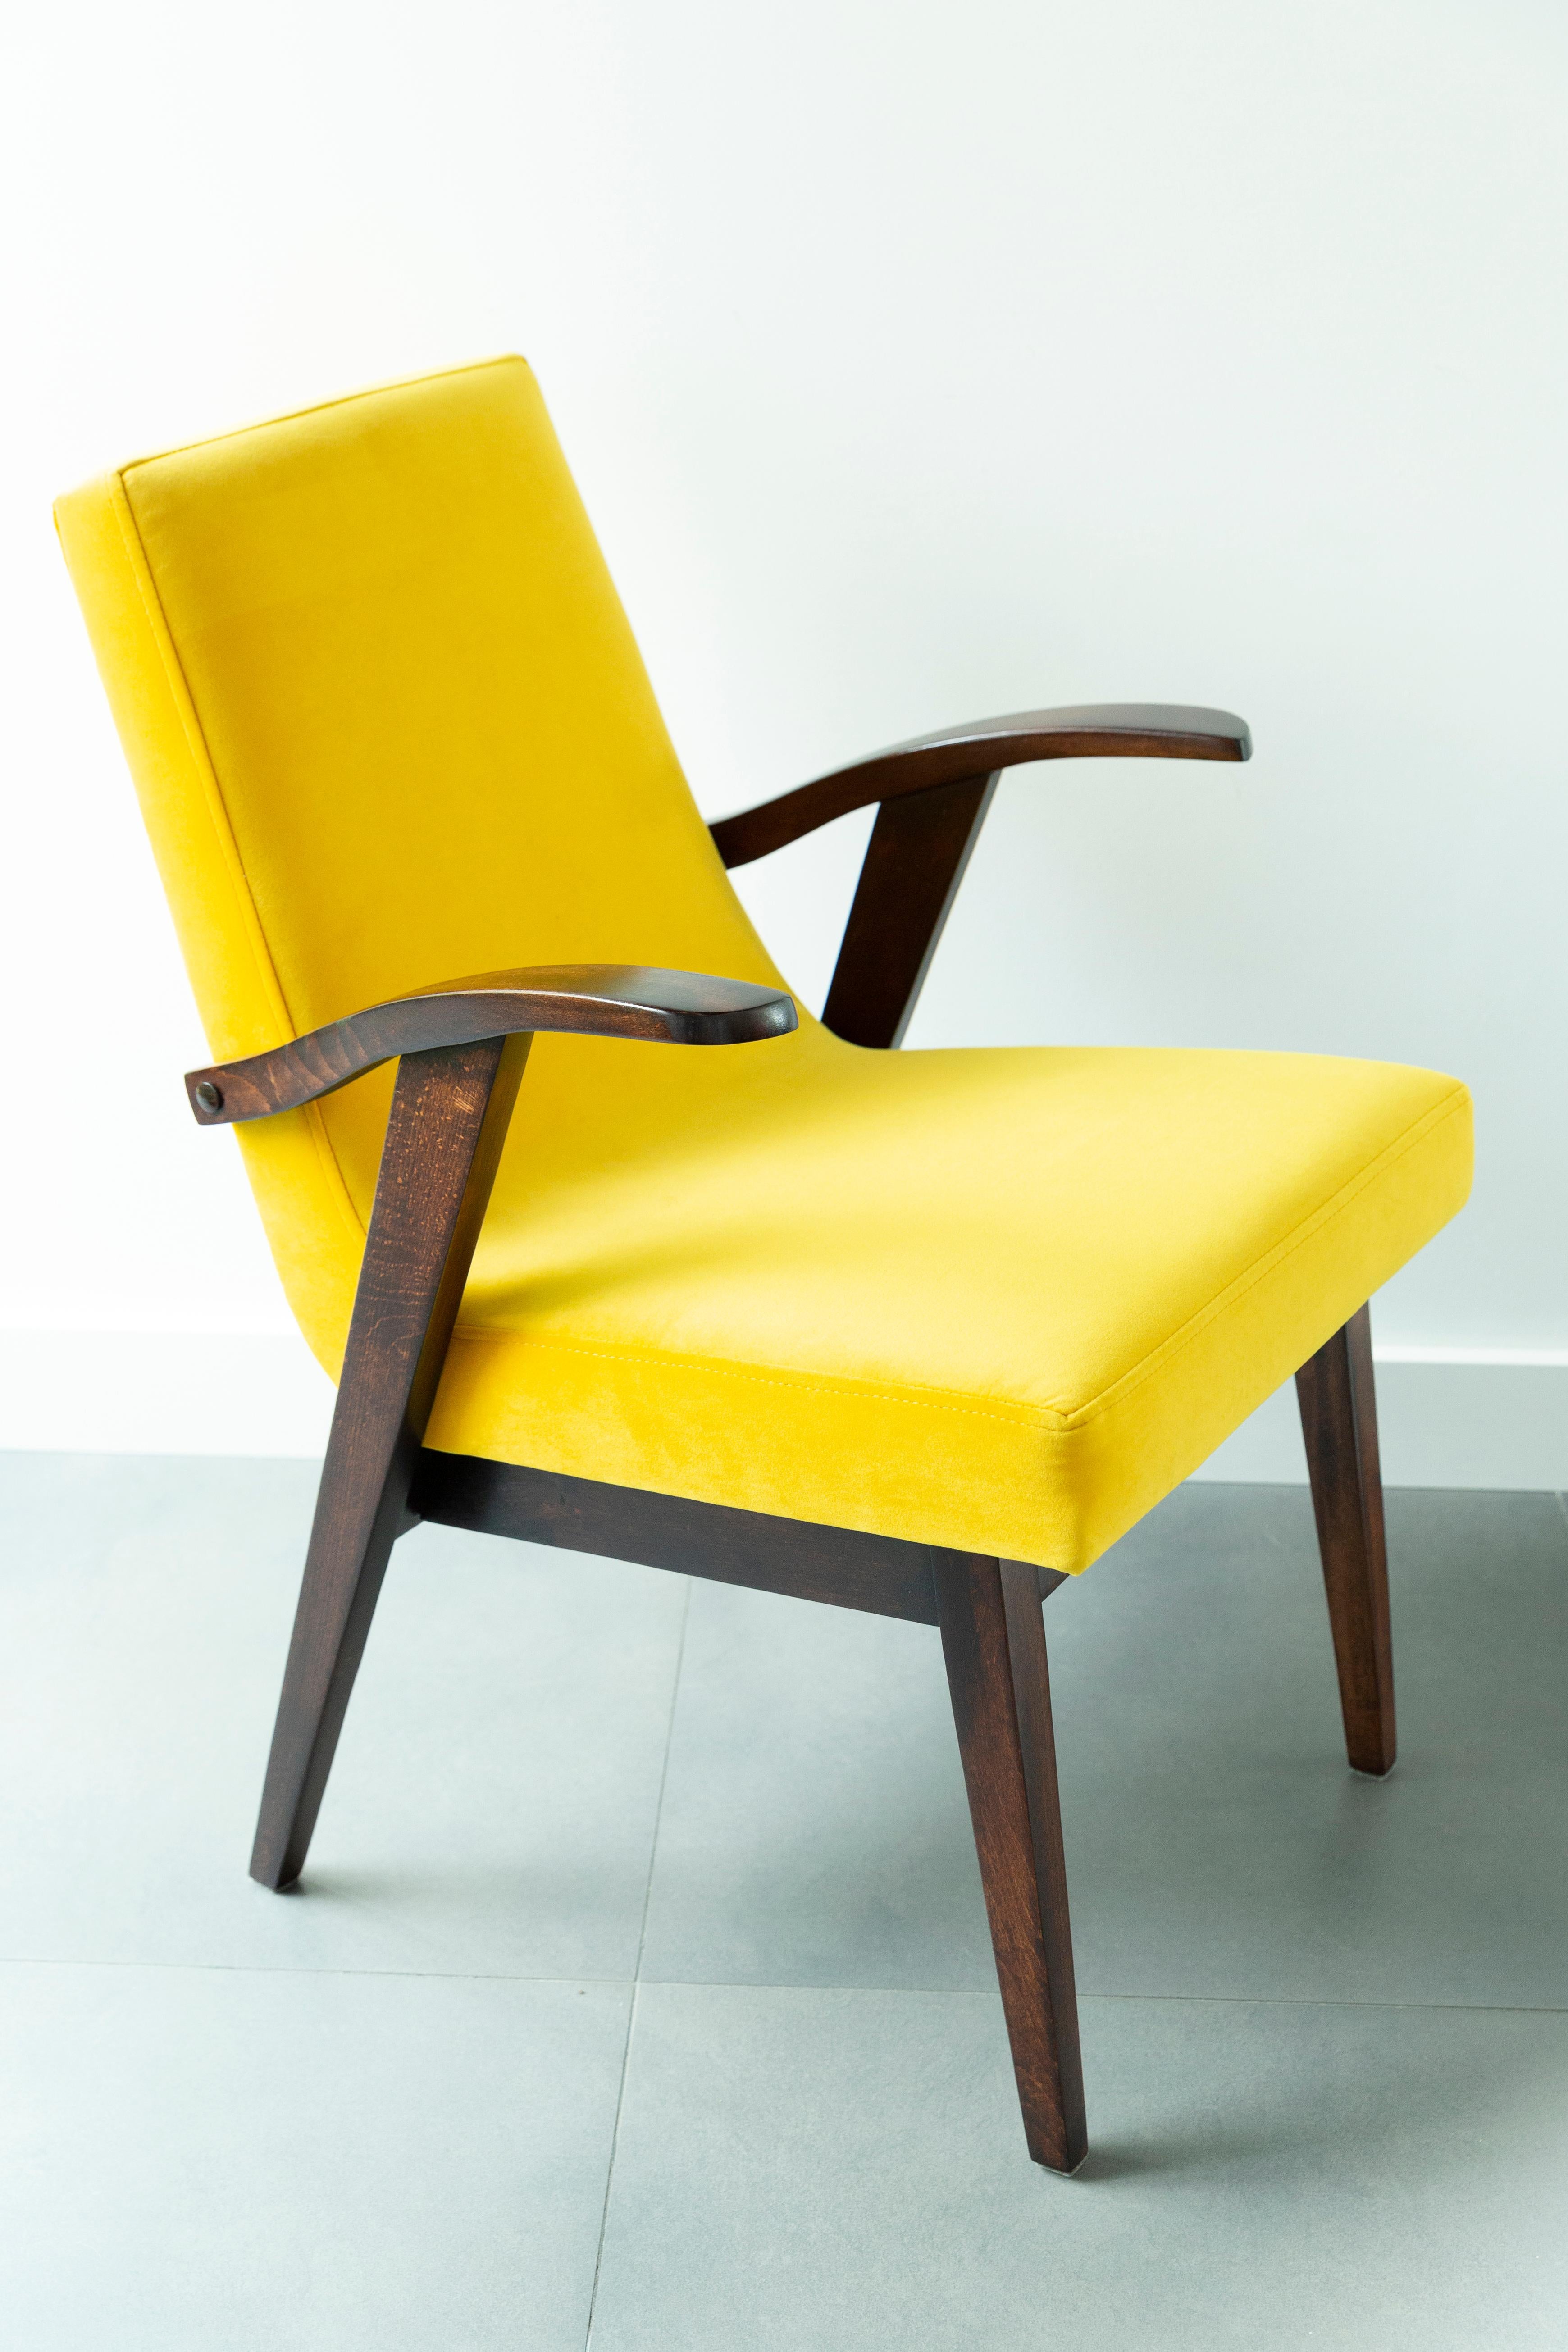 Stühle entworfen von Mieczyslaw Puchala. Dunkelbraunes Holz kombiniert mit gelbem, schönem Samt verleiht ihm Eleganz und Noblesse. Die Stühle sind nach einer kompletten Renovierung von Schreinerei und Polsterei. Das Holz ist nach der vollständigen